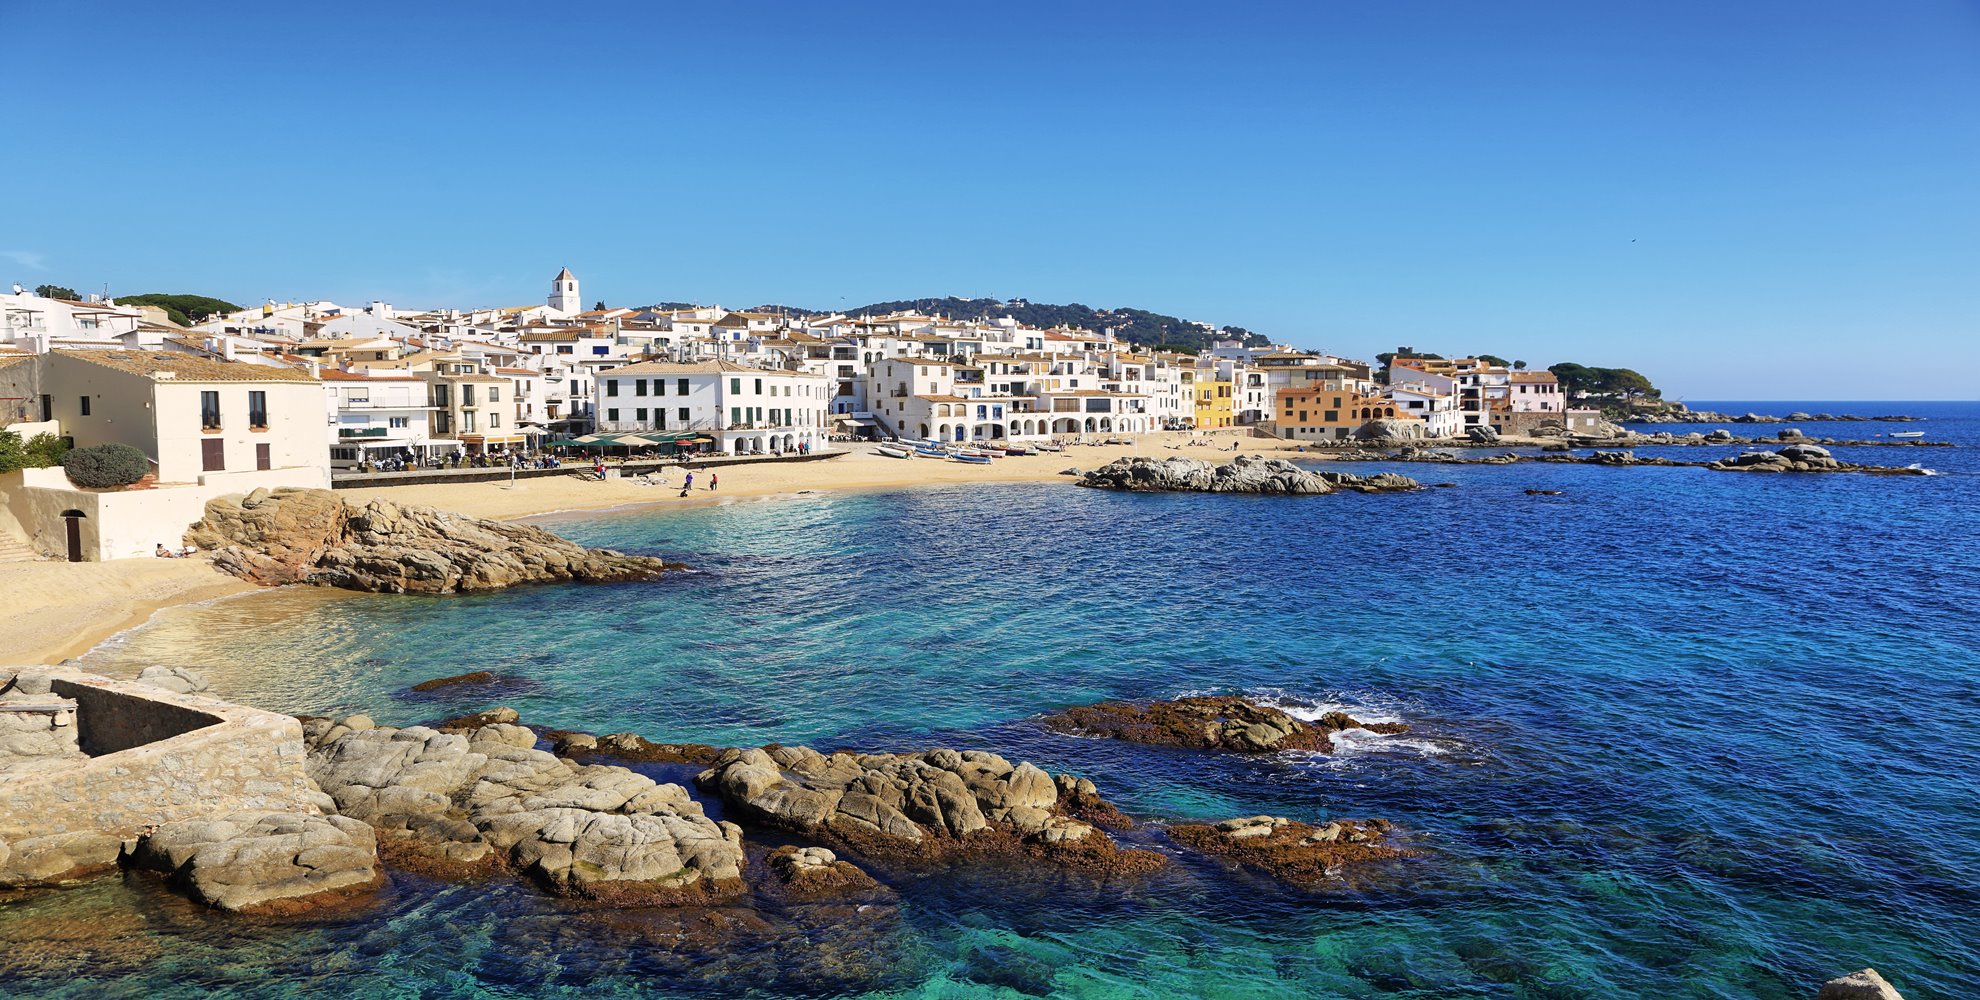 Vijf zaken die u zich moet afvragen alvorens u kiest voor een tweede verblijf in Spanje